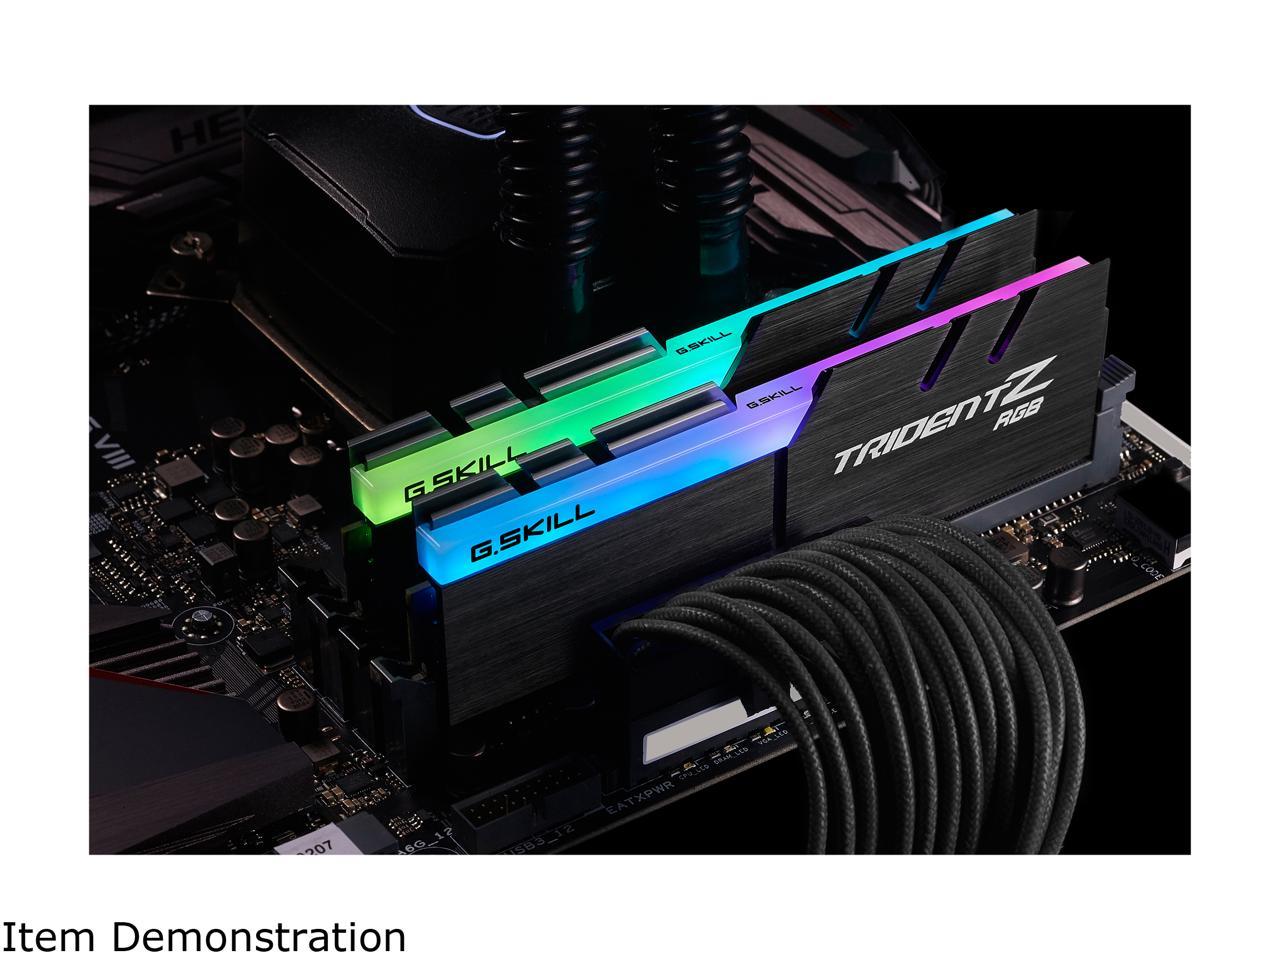 G.SKILL TridentZ RGB Series 64GB (2 x 32GB) 288-Pin DDR4 SDRAM DDR4 3200 (PC4 25600) Intel XMP 2.0 Desktop Memory Model F4-3200C14D-64GTZR